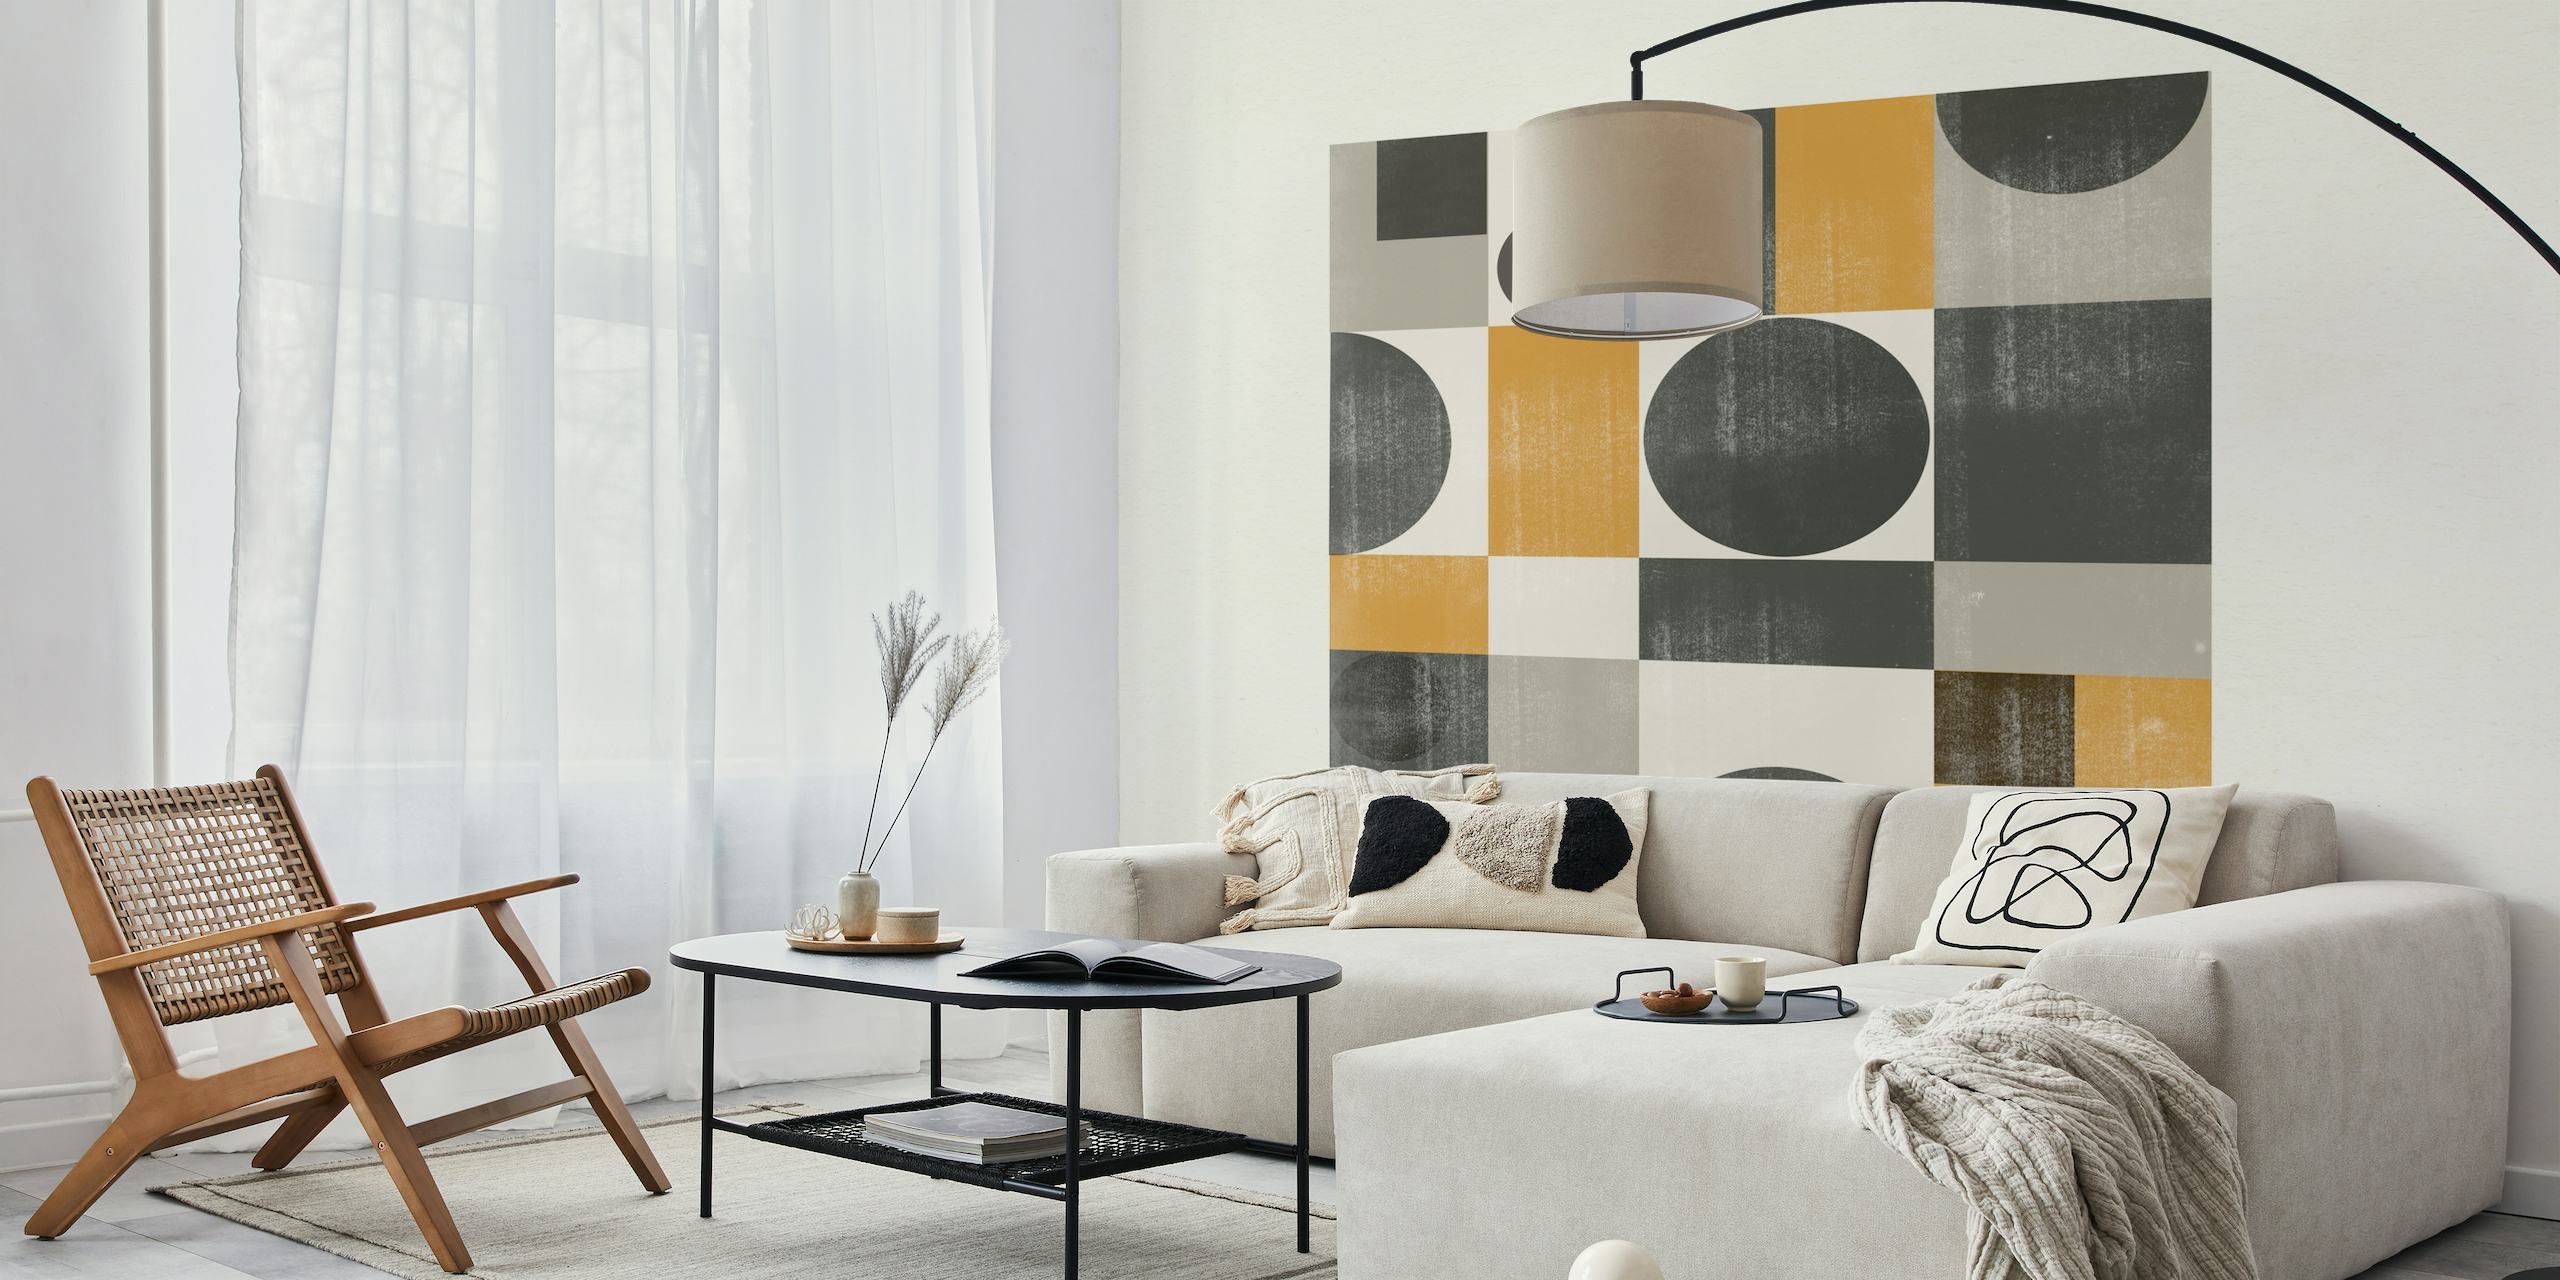 Geometrisch MidCentury Modern patroon in grijs, zwart en zacht goud voor muurschildering